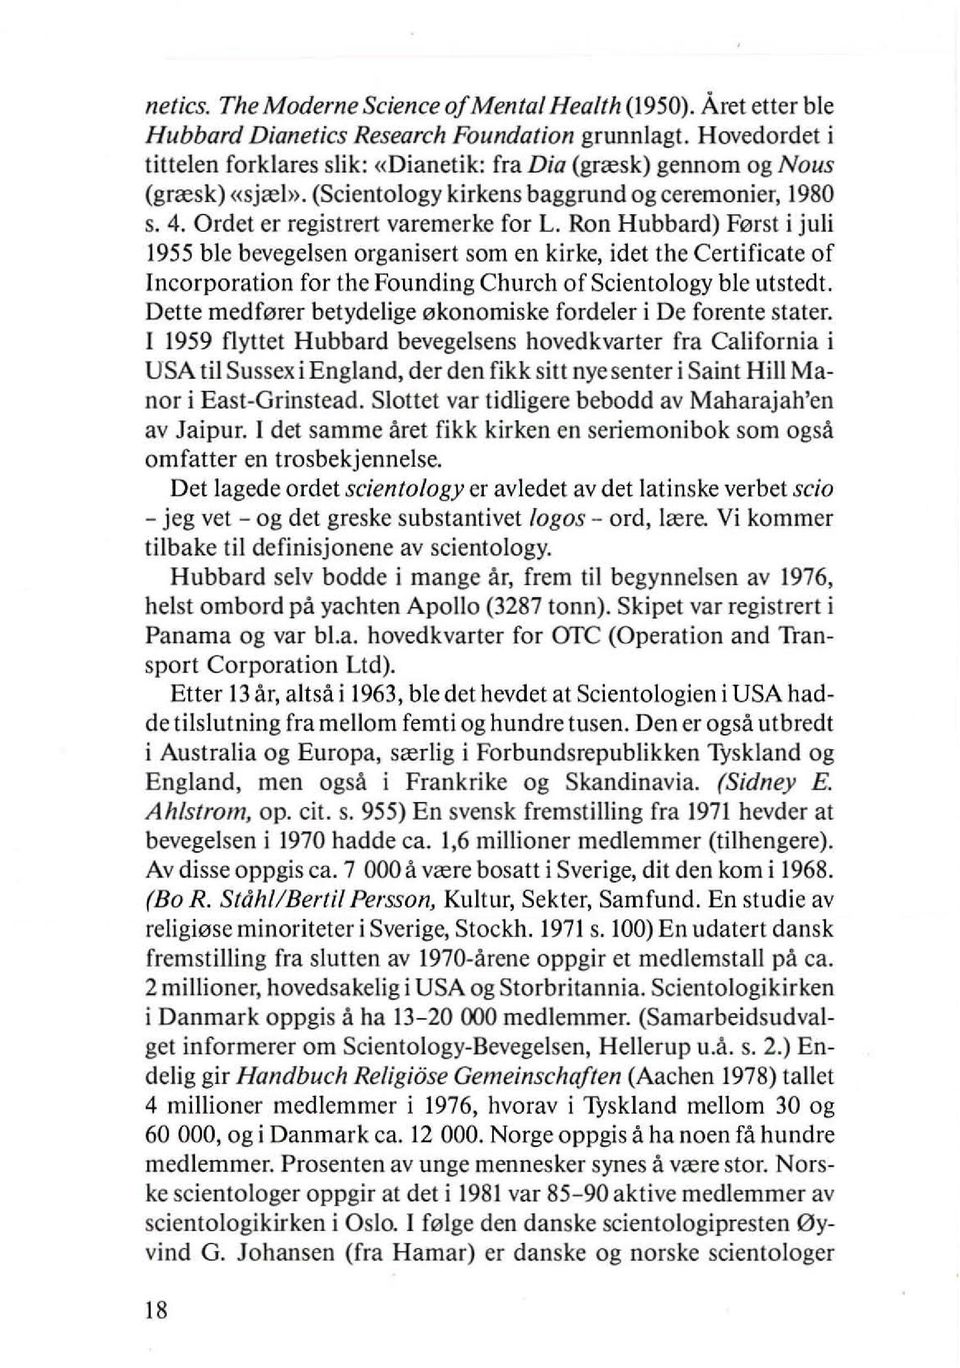 Ron Hubbard) F0rst i juli 1955 ble bevegelsen organisert som en klrke, idet the Certificate of Incorporation for the Founding Church ofscientology ble utstedt.